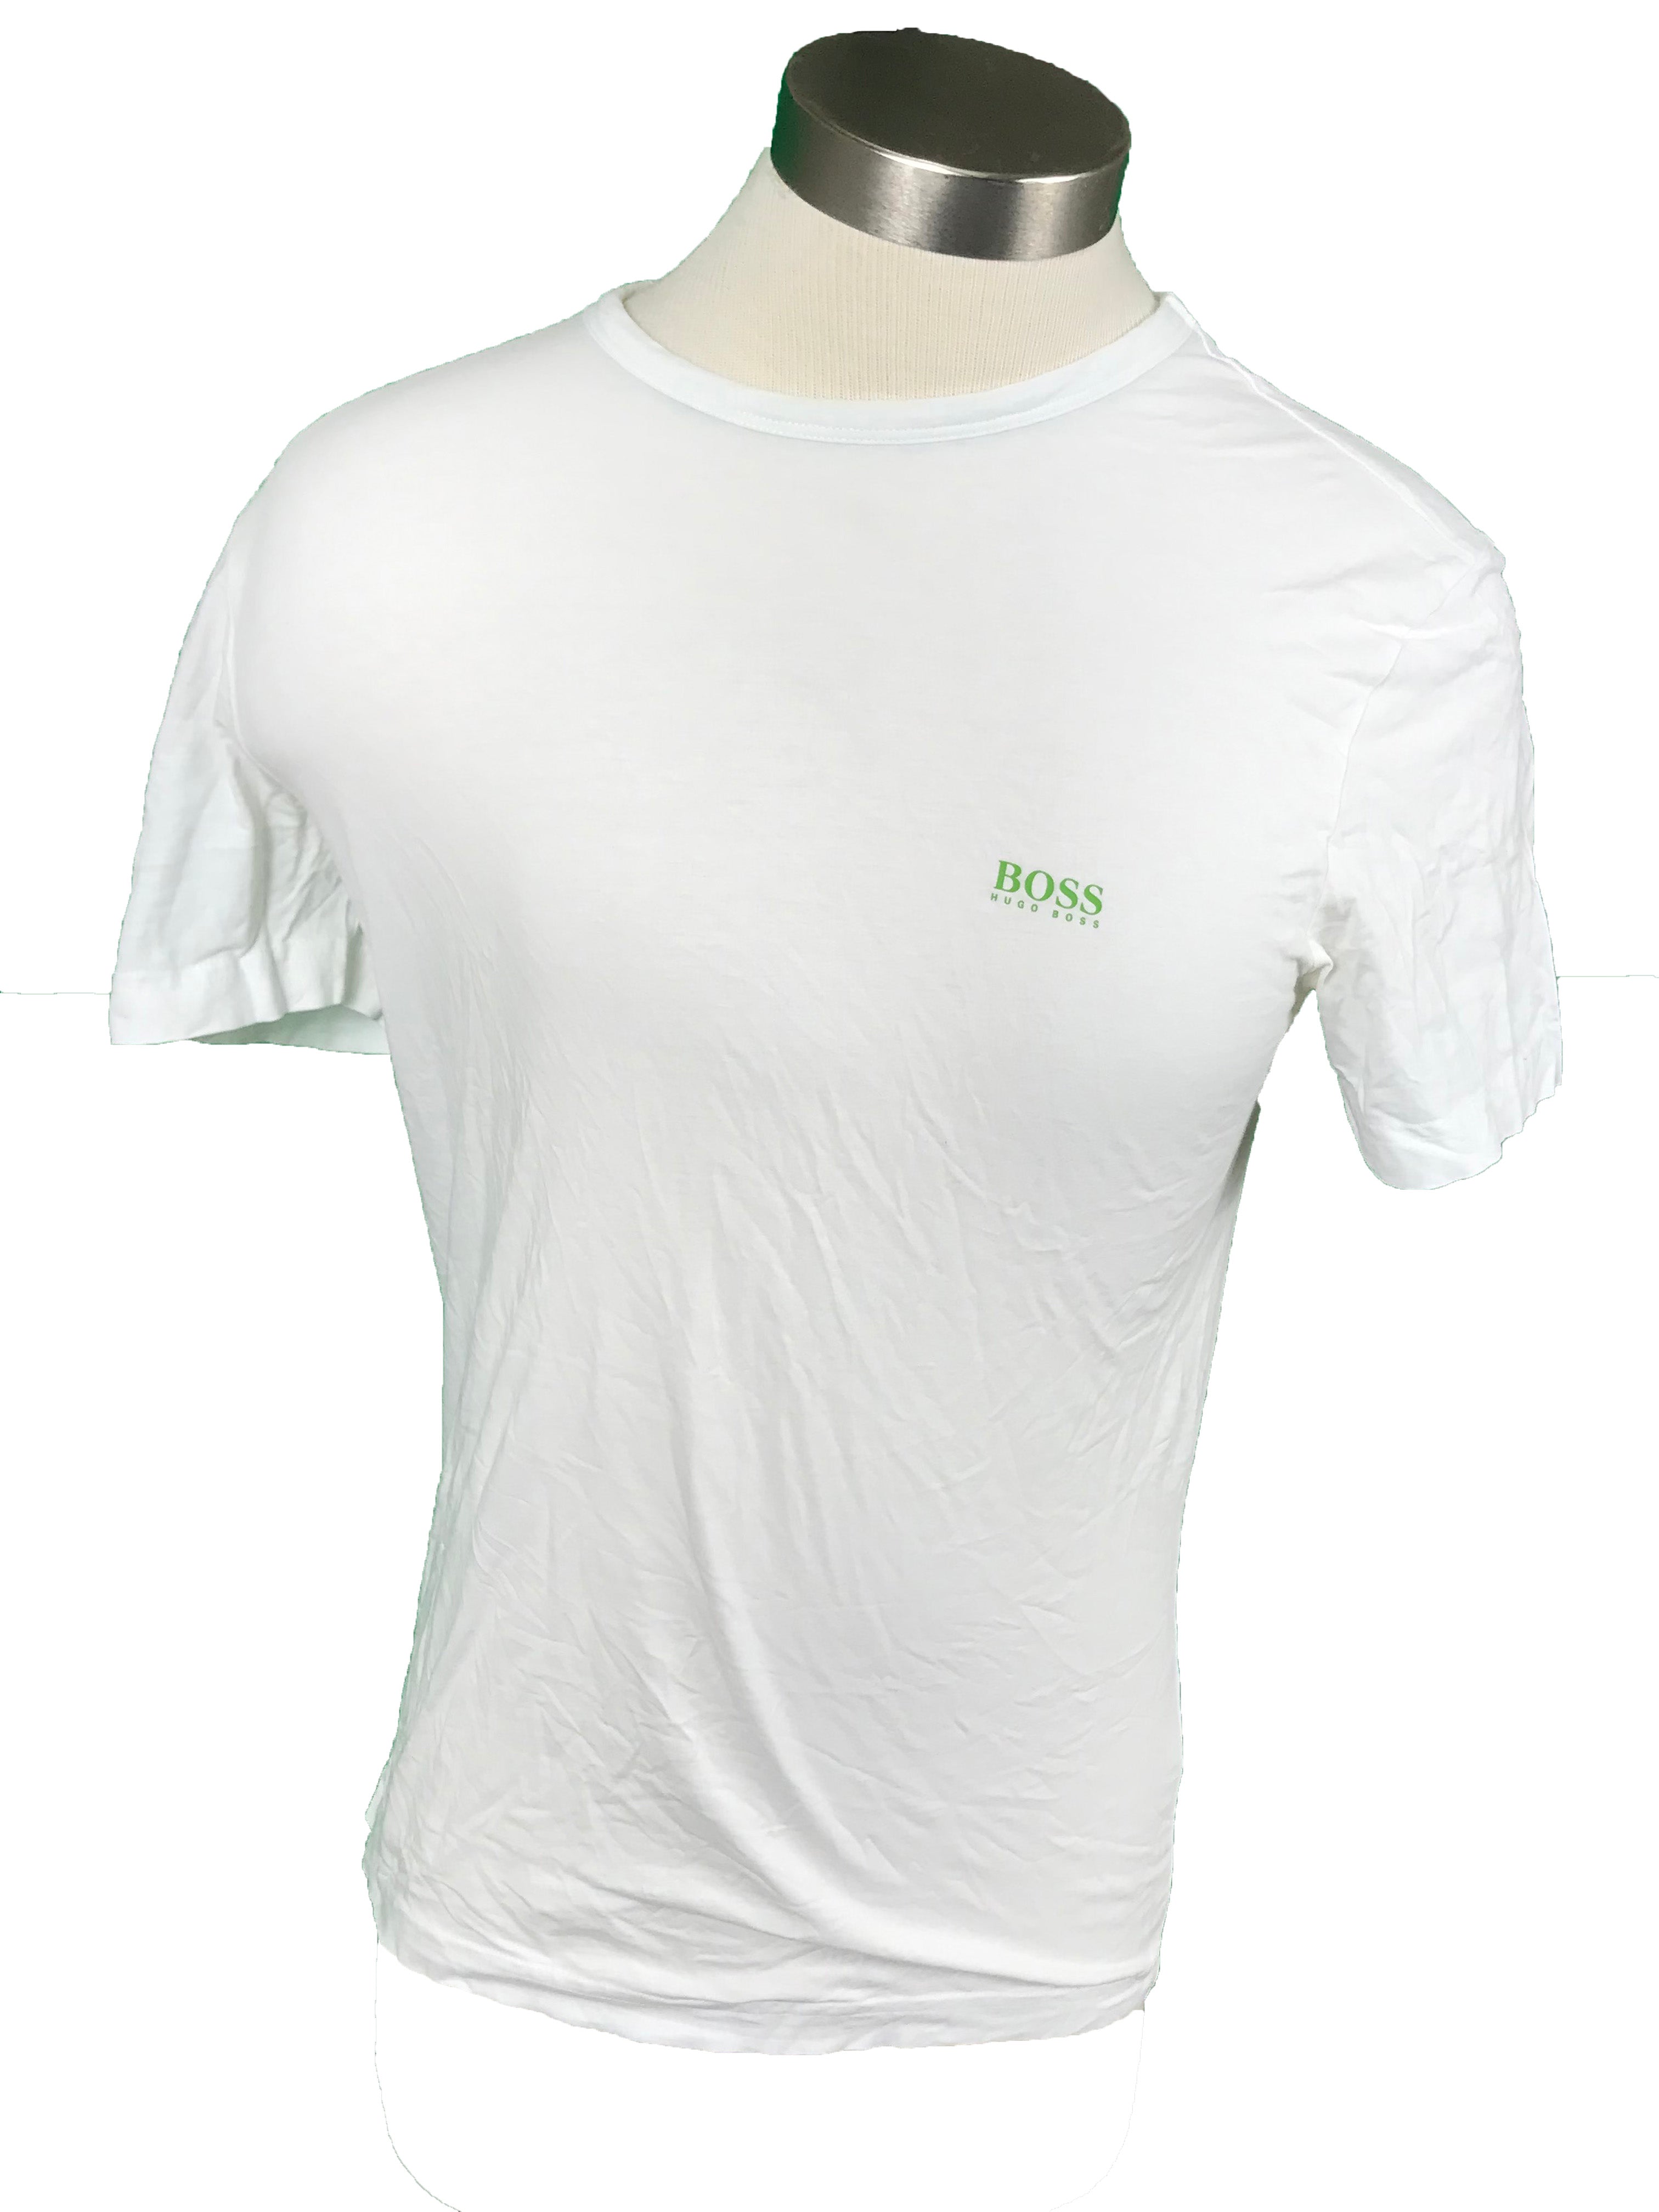 Hugo Boss White T-Shirt Men's Size Small